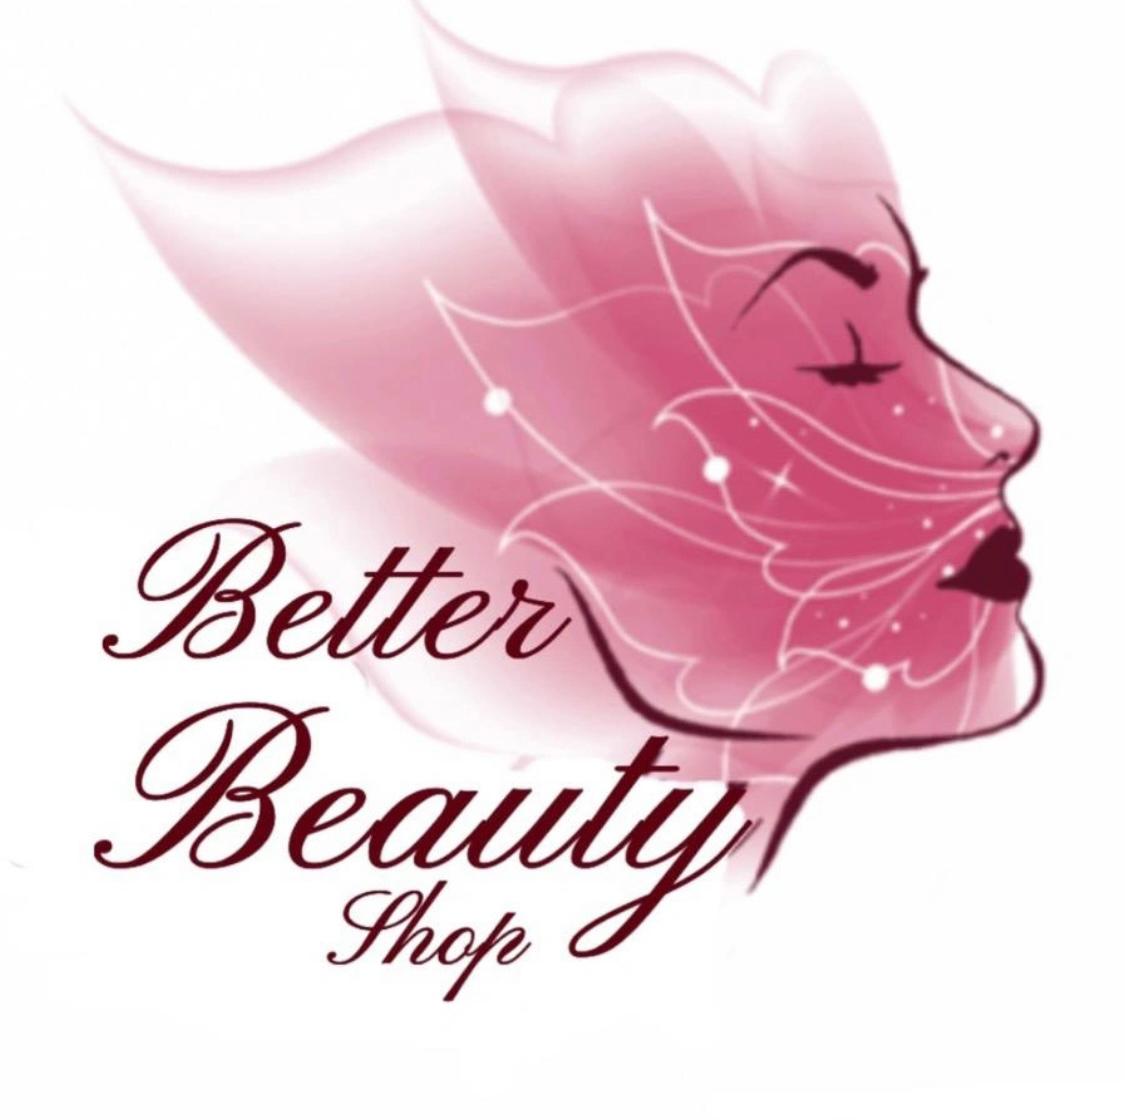 Better_beauty_shop